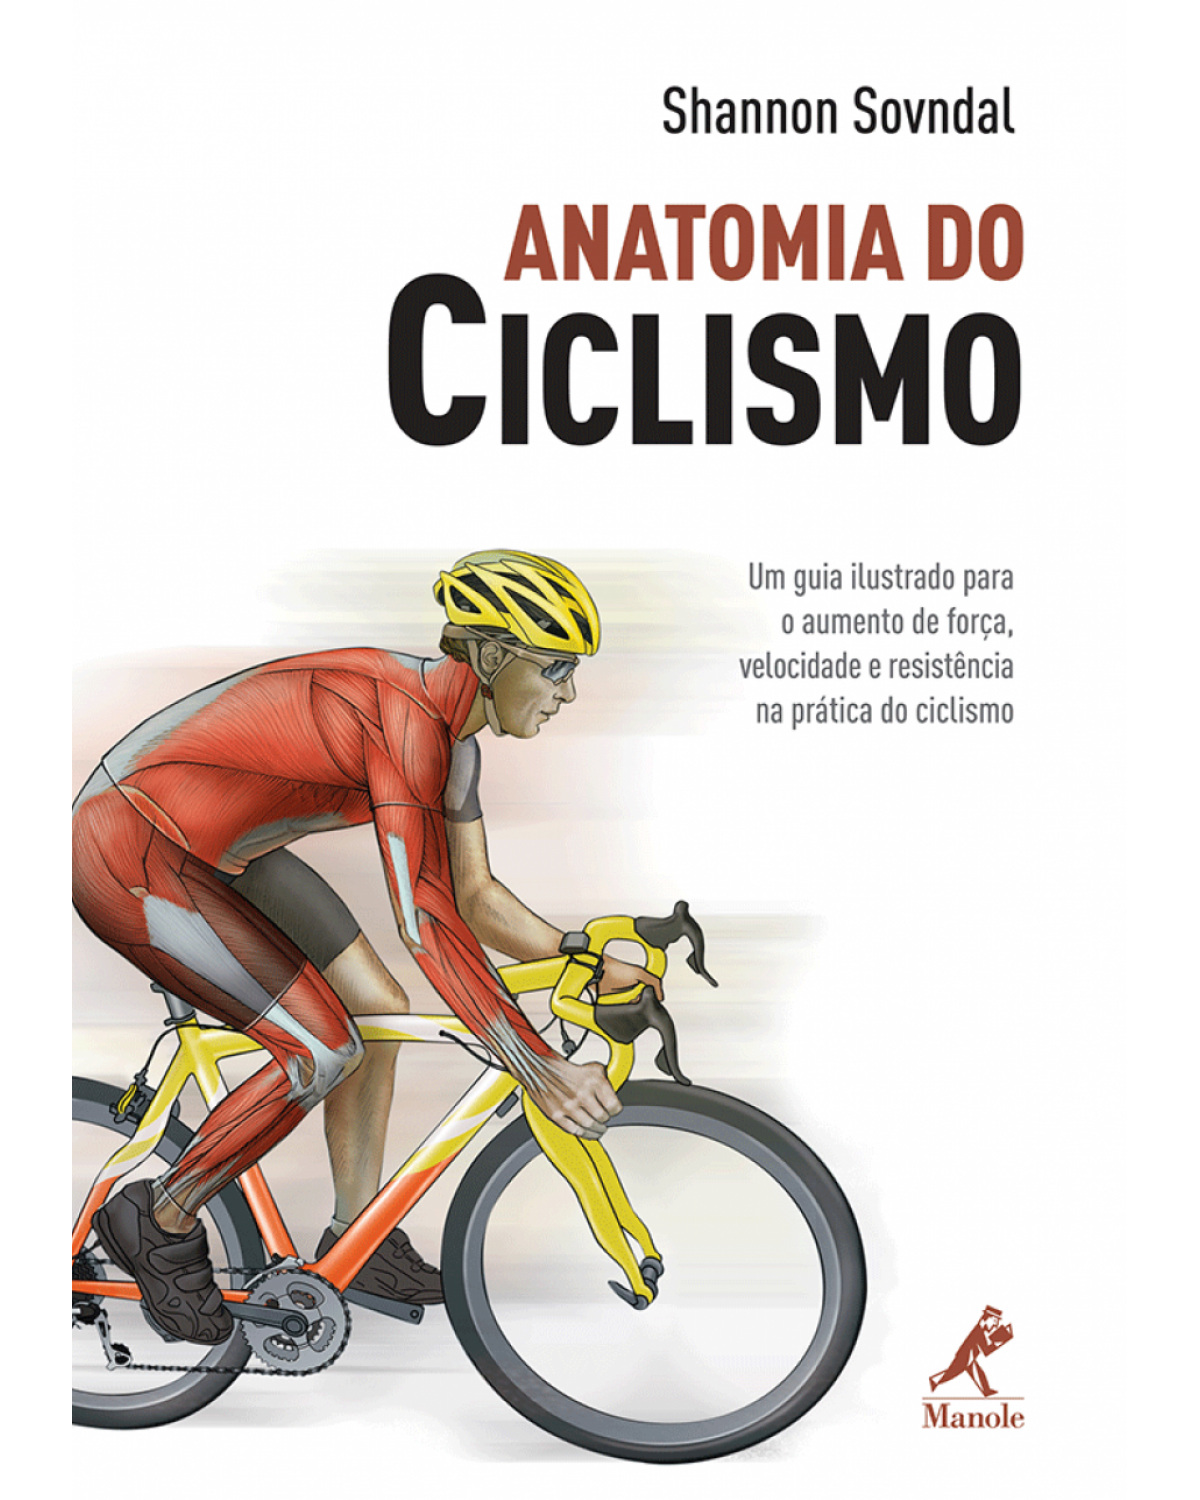 Anatomia do ciclismo - Um guia ilustrado para o aumento de força, velocidade e resistência na prática do ciclismo - 1ª Edição | 2010